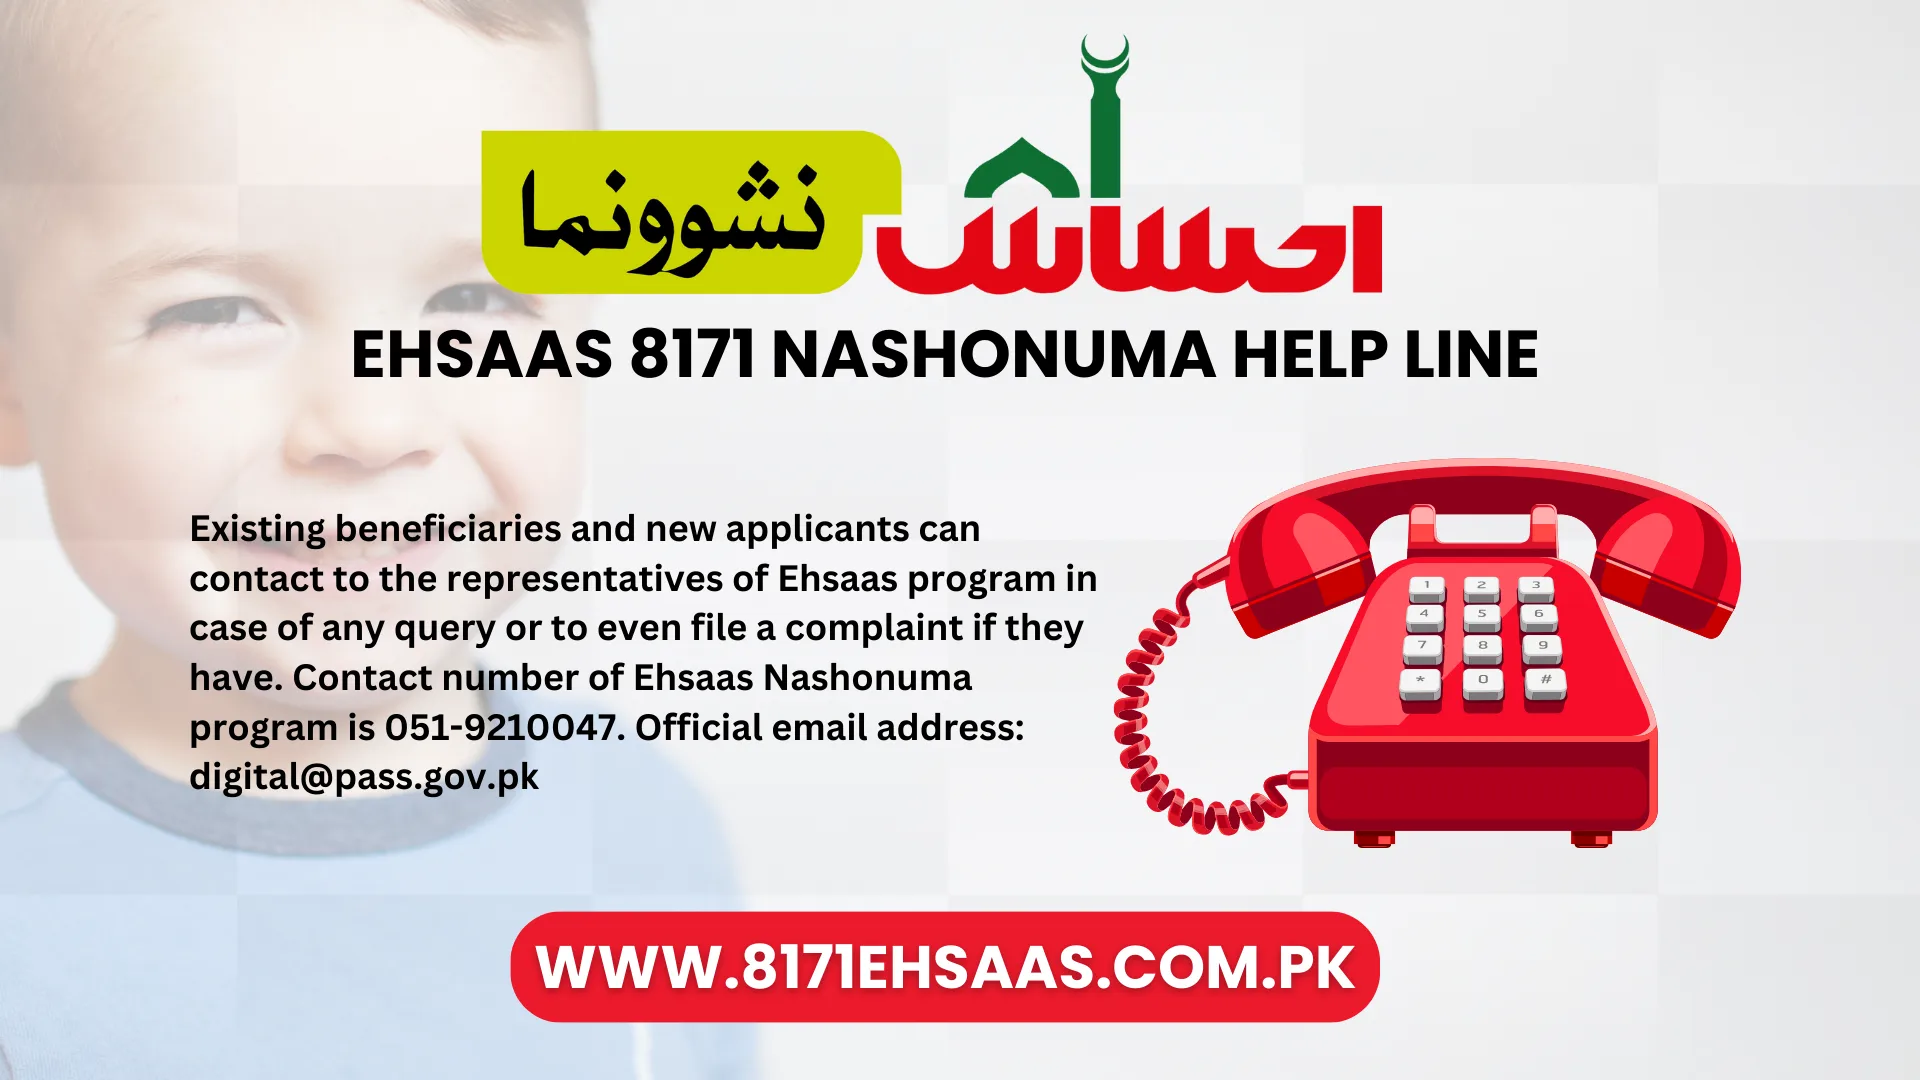 Ehsaas 8171 Nashonuma Help Line